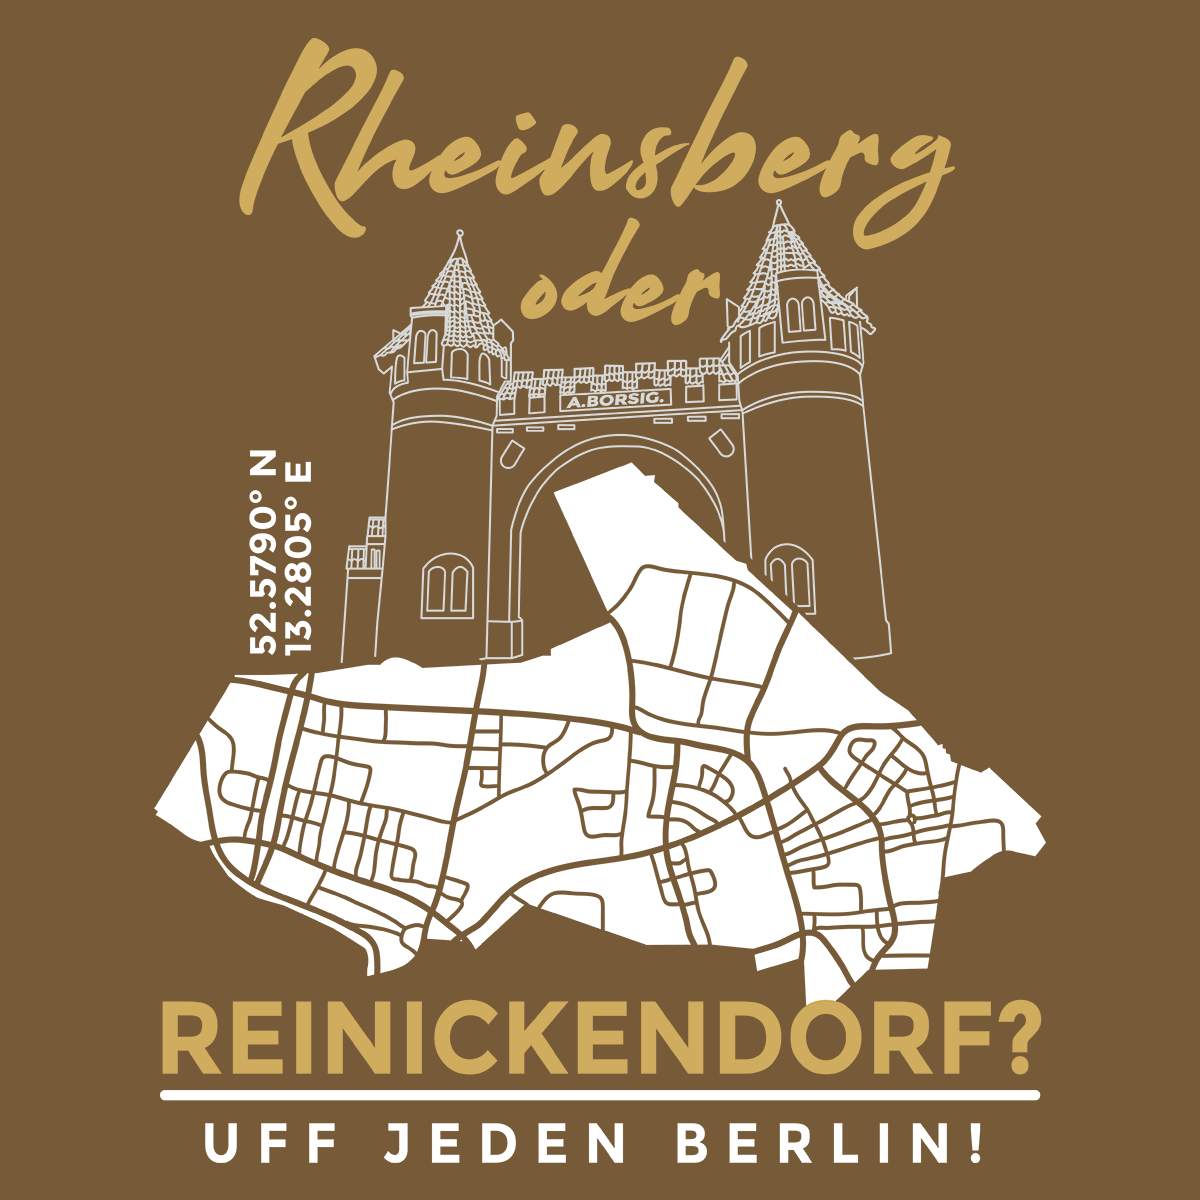 Rheinsberg oder Reinickendorf